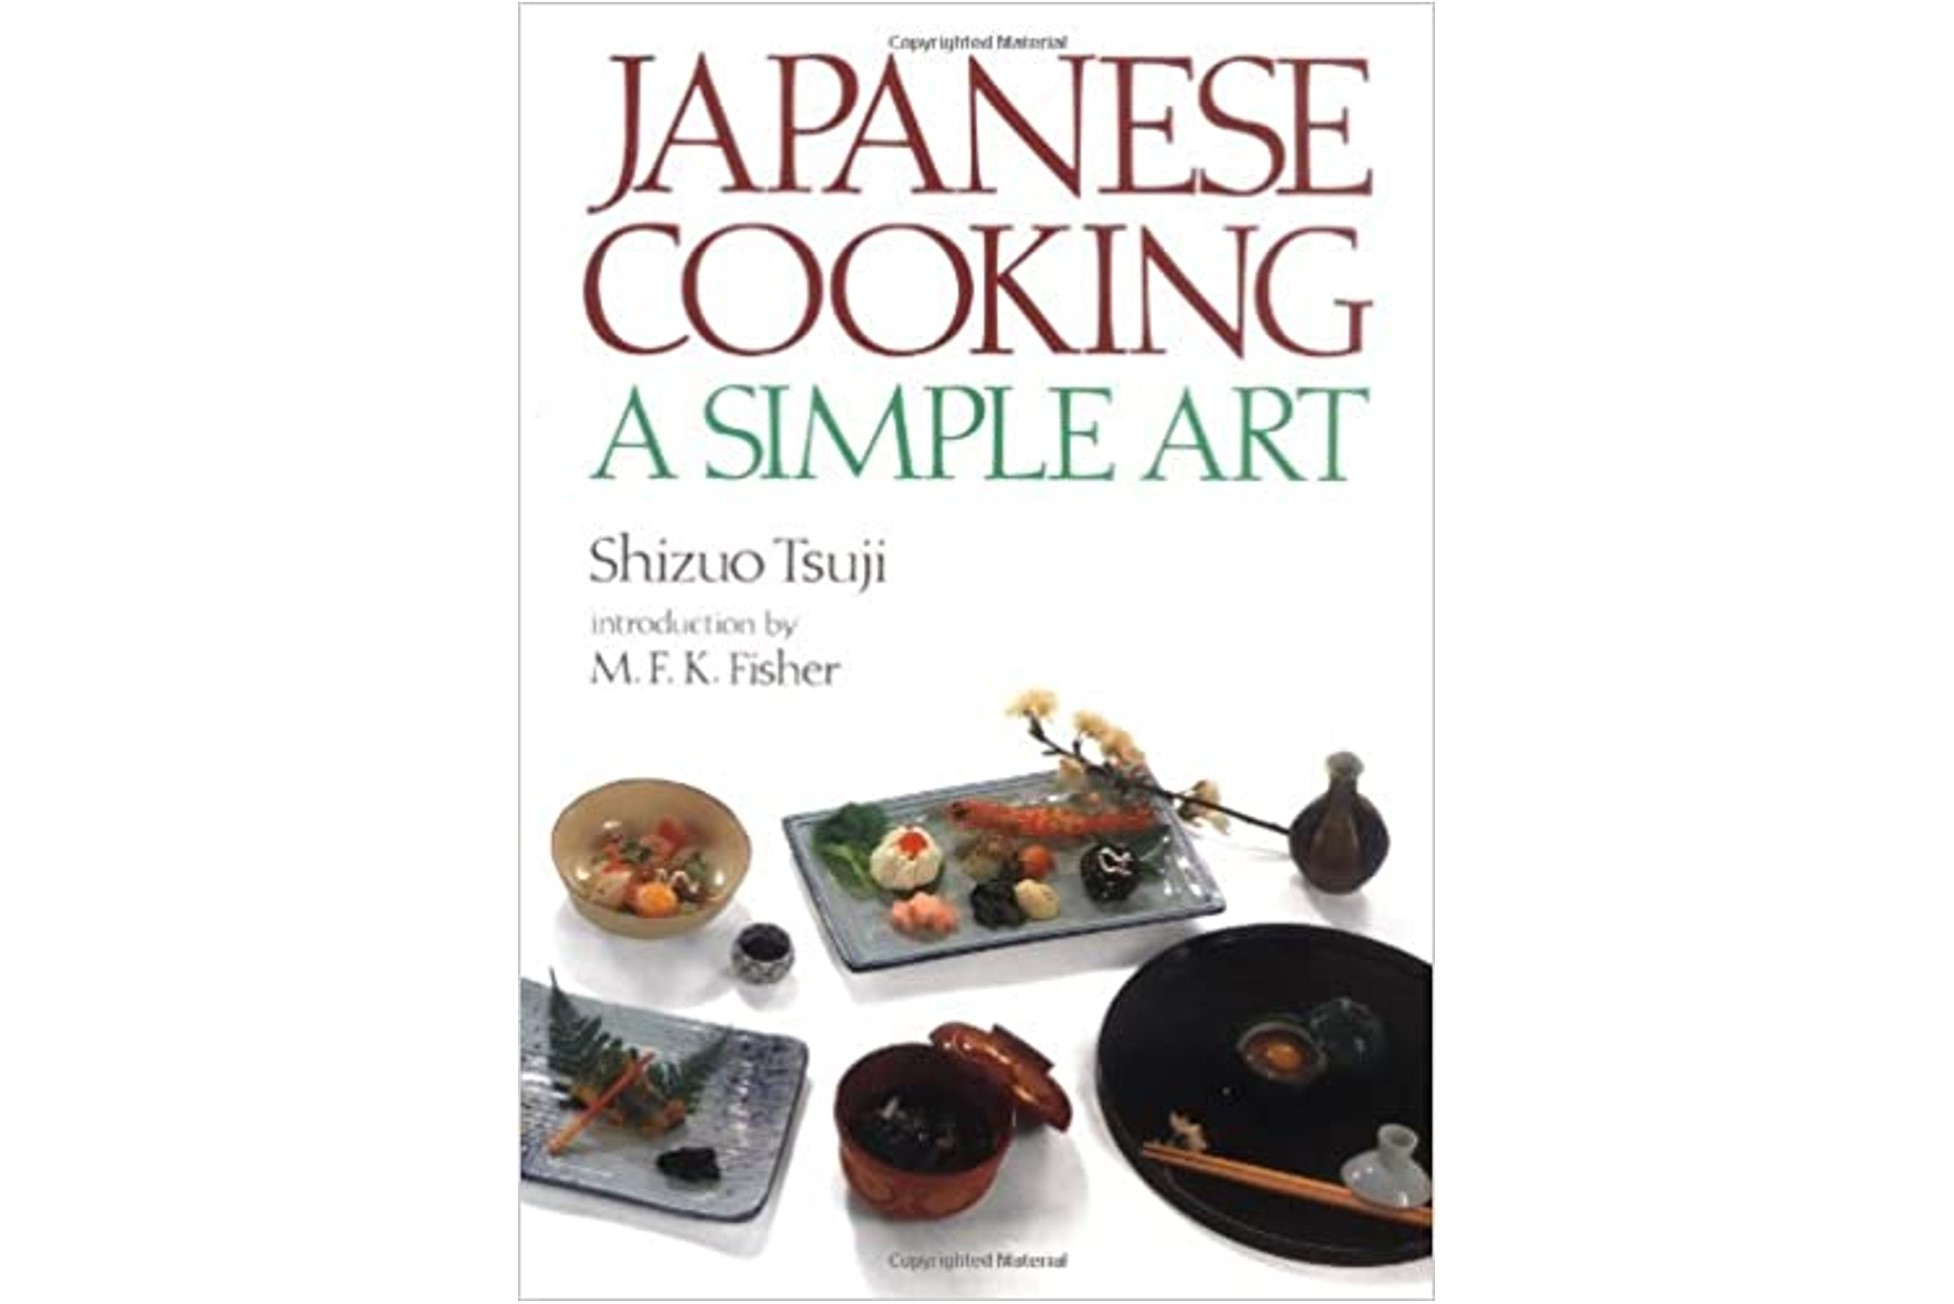 Japanese Cooking ： A Simple Art　英文版 辻静雄の日本料理